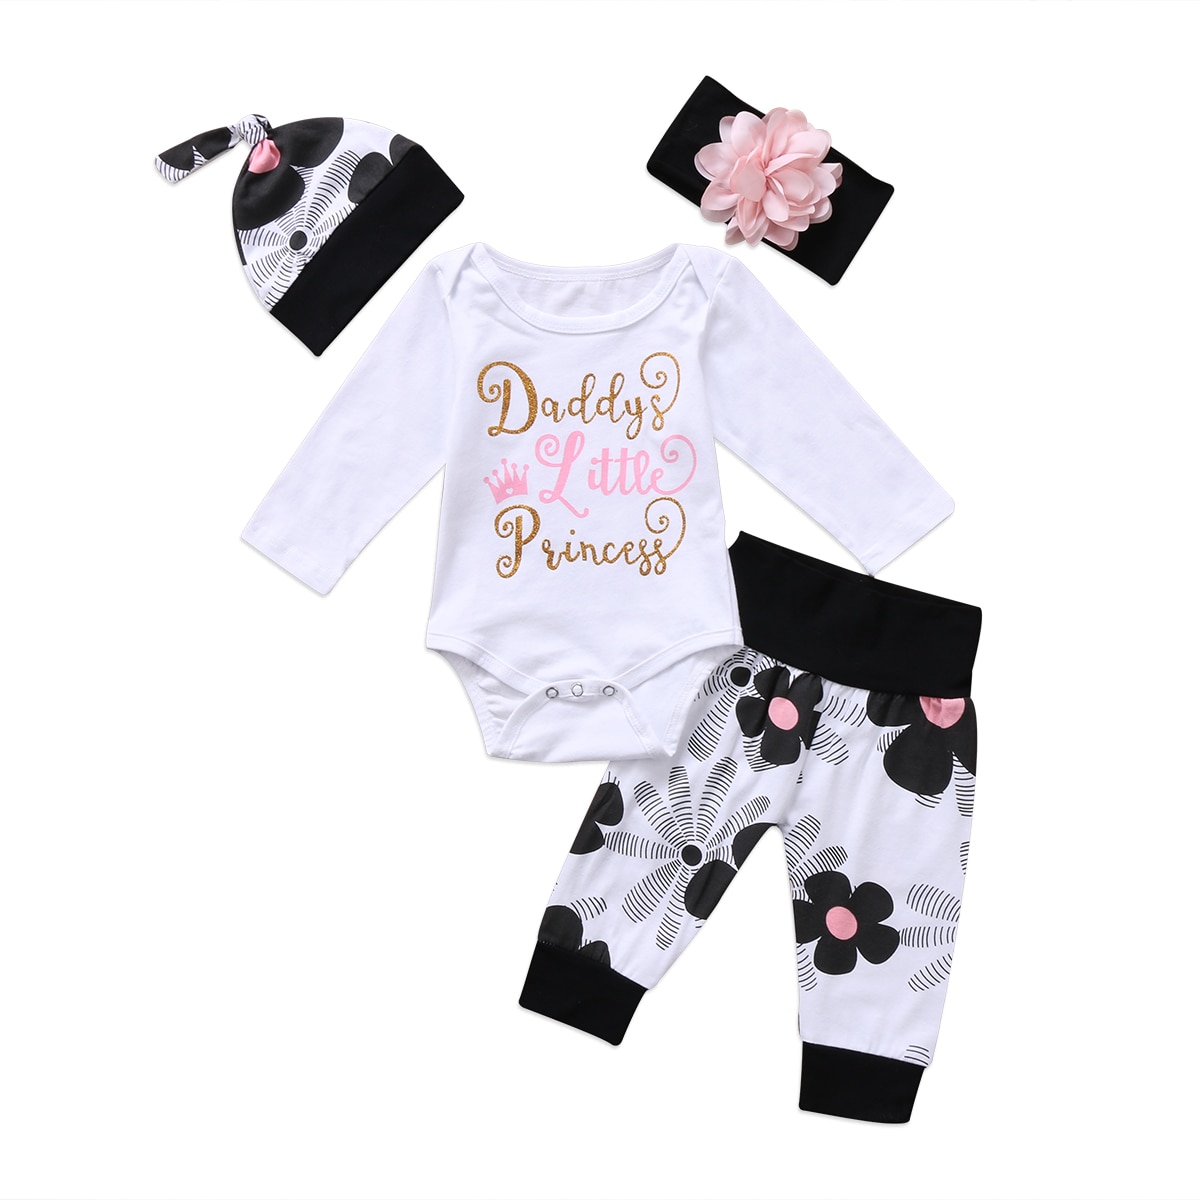 Pasgeboren Baby Meisjes 4 stuks Kleding Set Bloem bebe Outfit papa prinses Jumpsuit Bodysuit + Bloemen Broek + Hoed + hoofdband Kleding Set